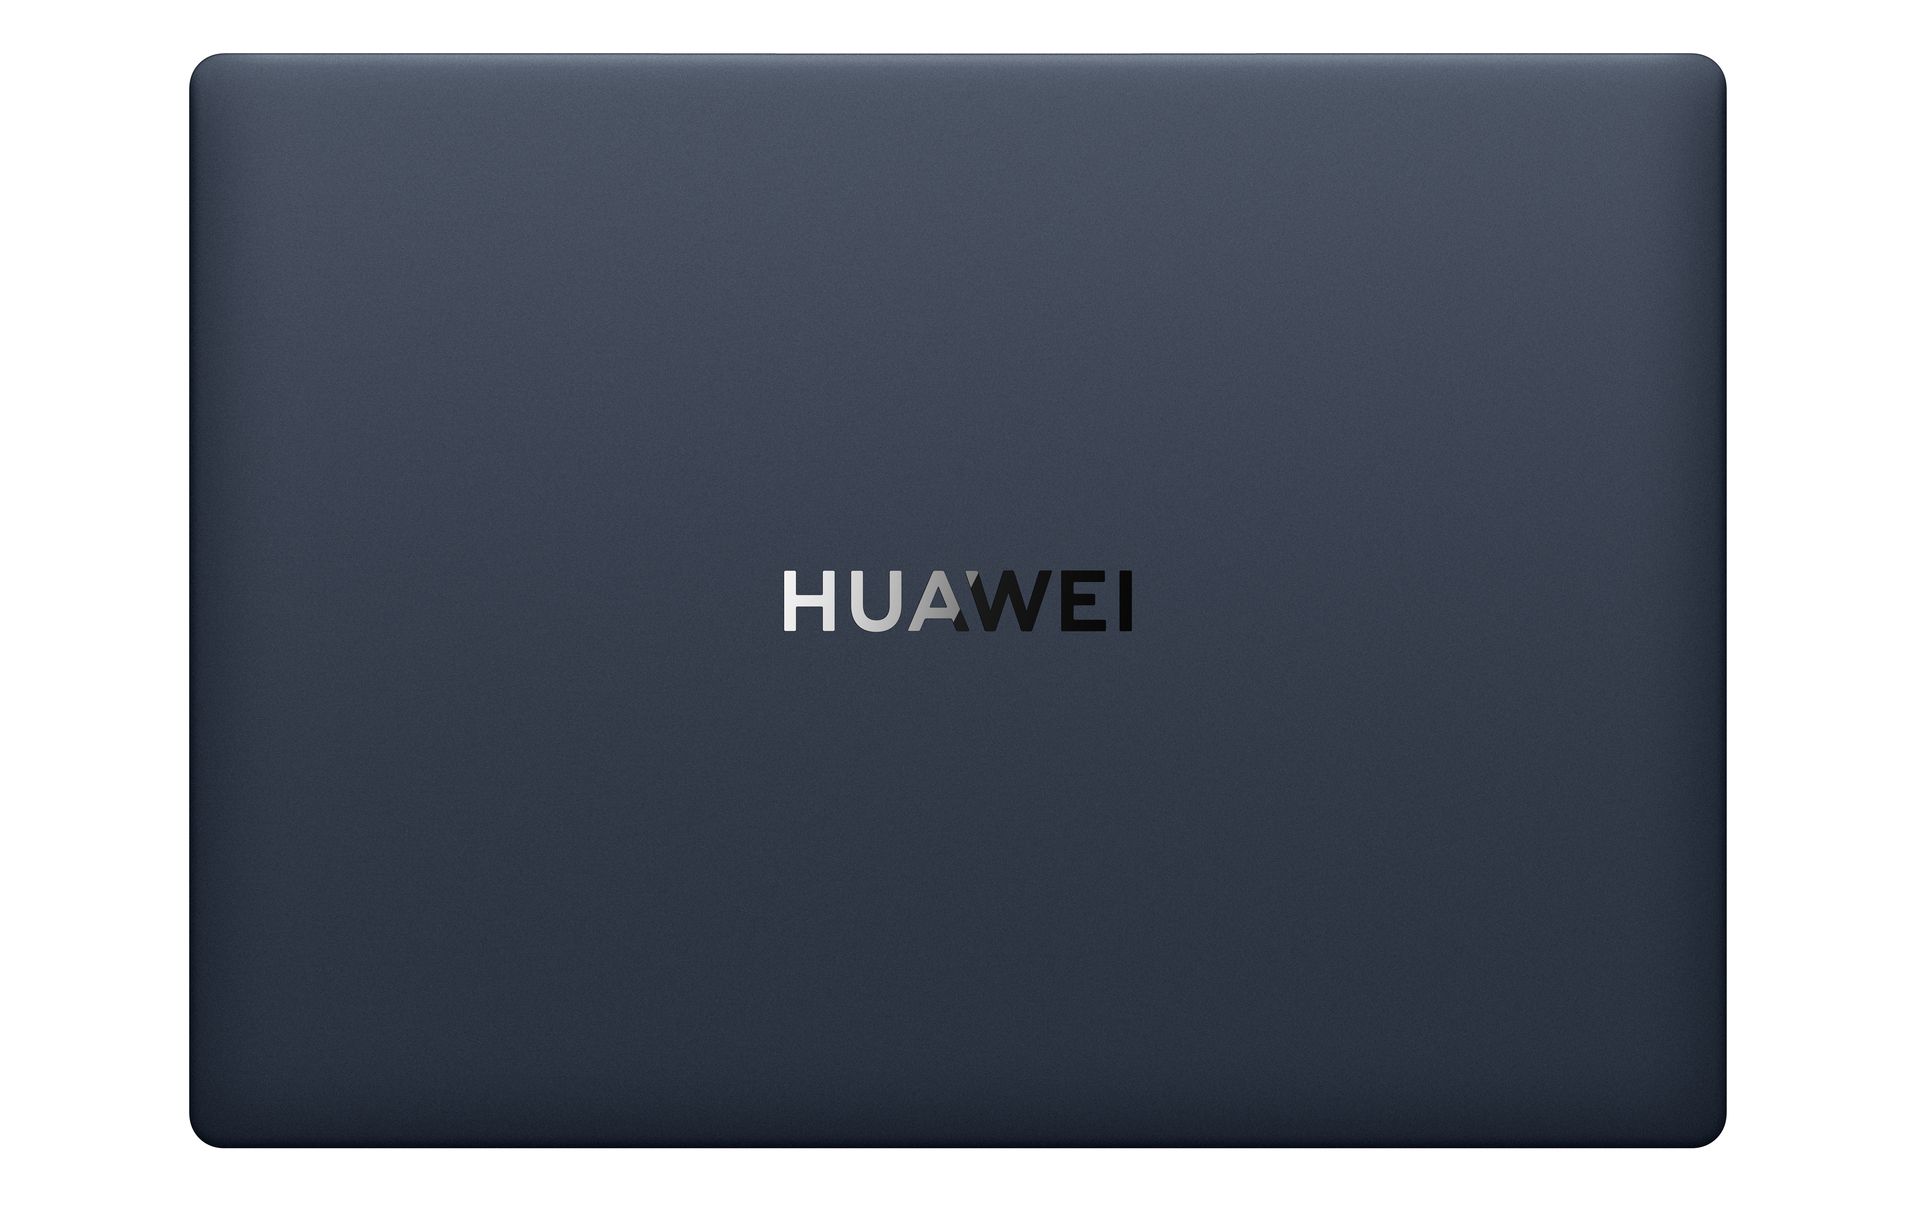 HUAWEI MateBook X Pro: Özellikleri, fiyatı ve çıkış tarihi